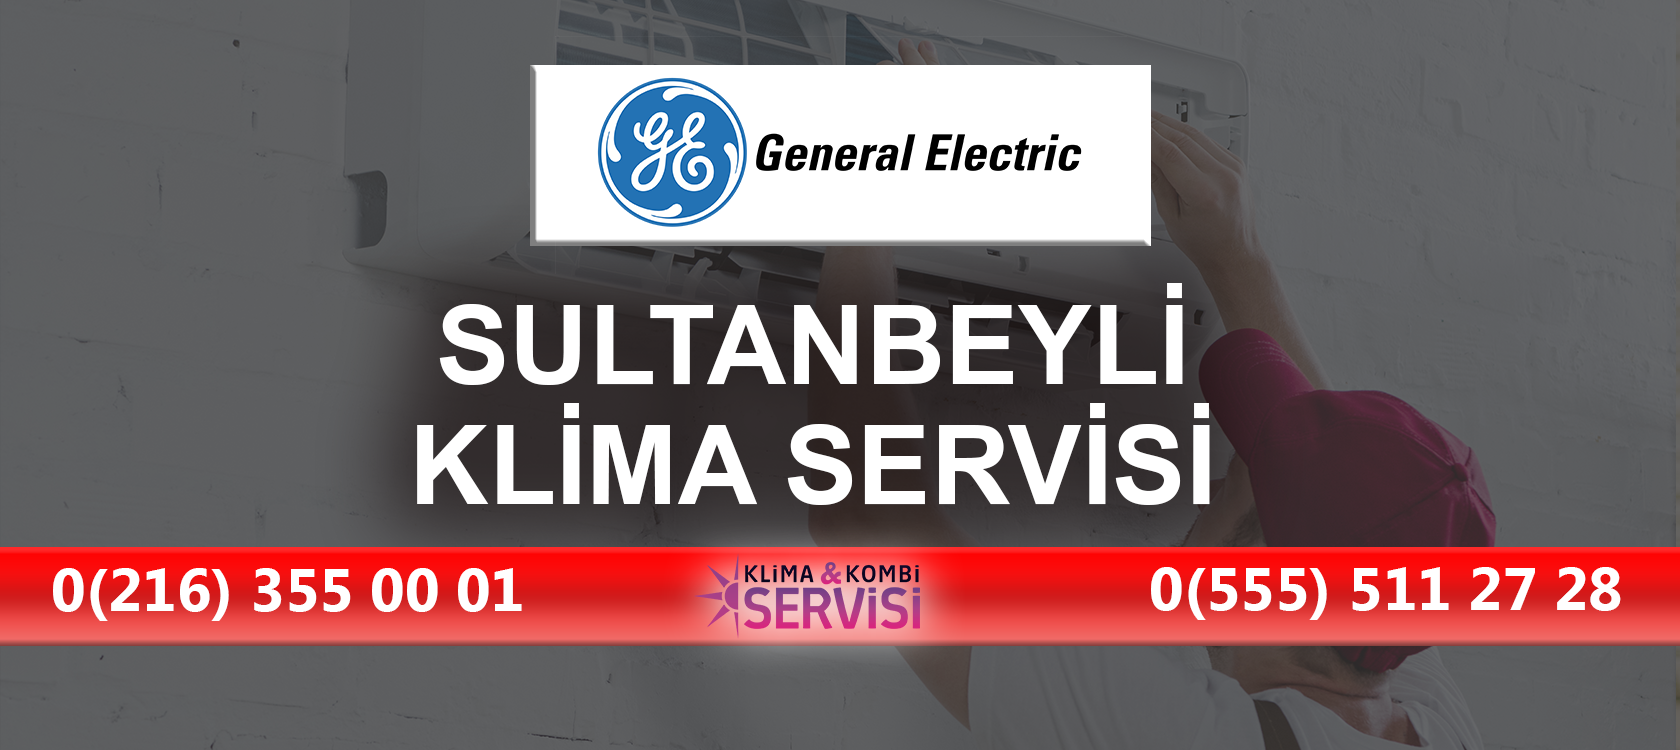 Sultanbeyli General Electric Klima Servisi